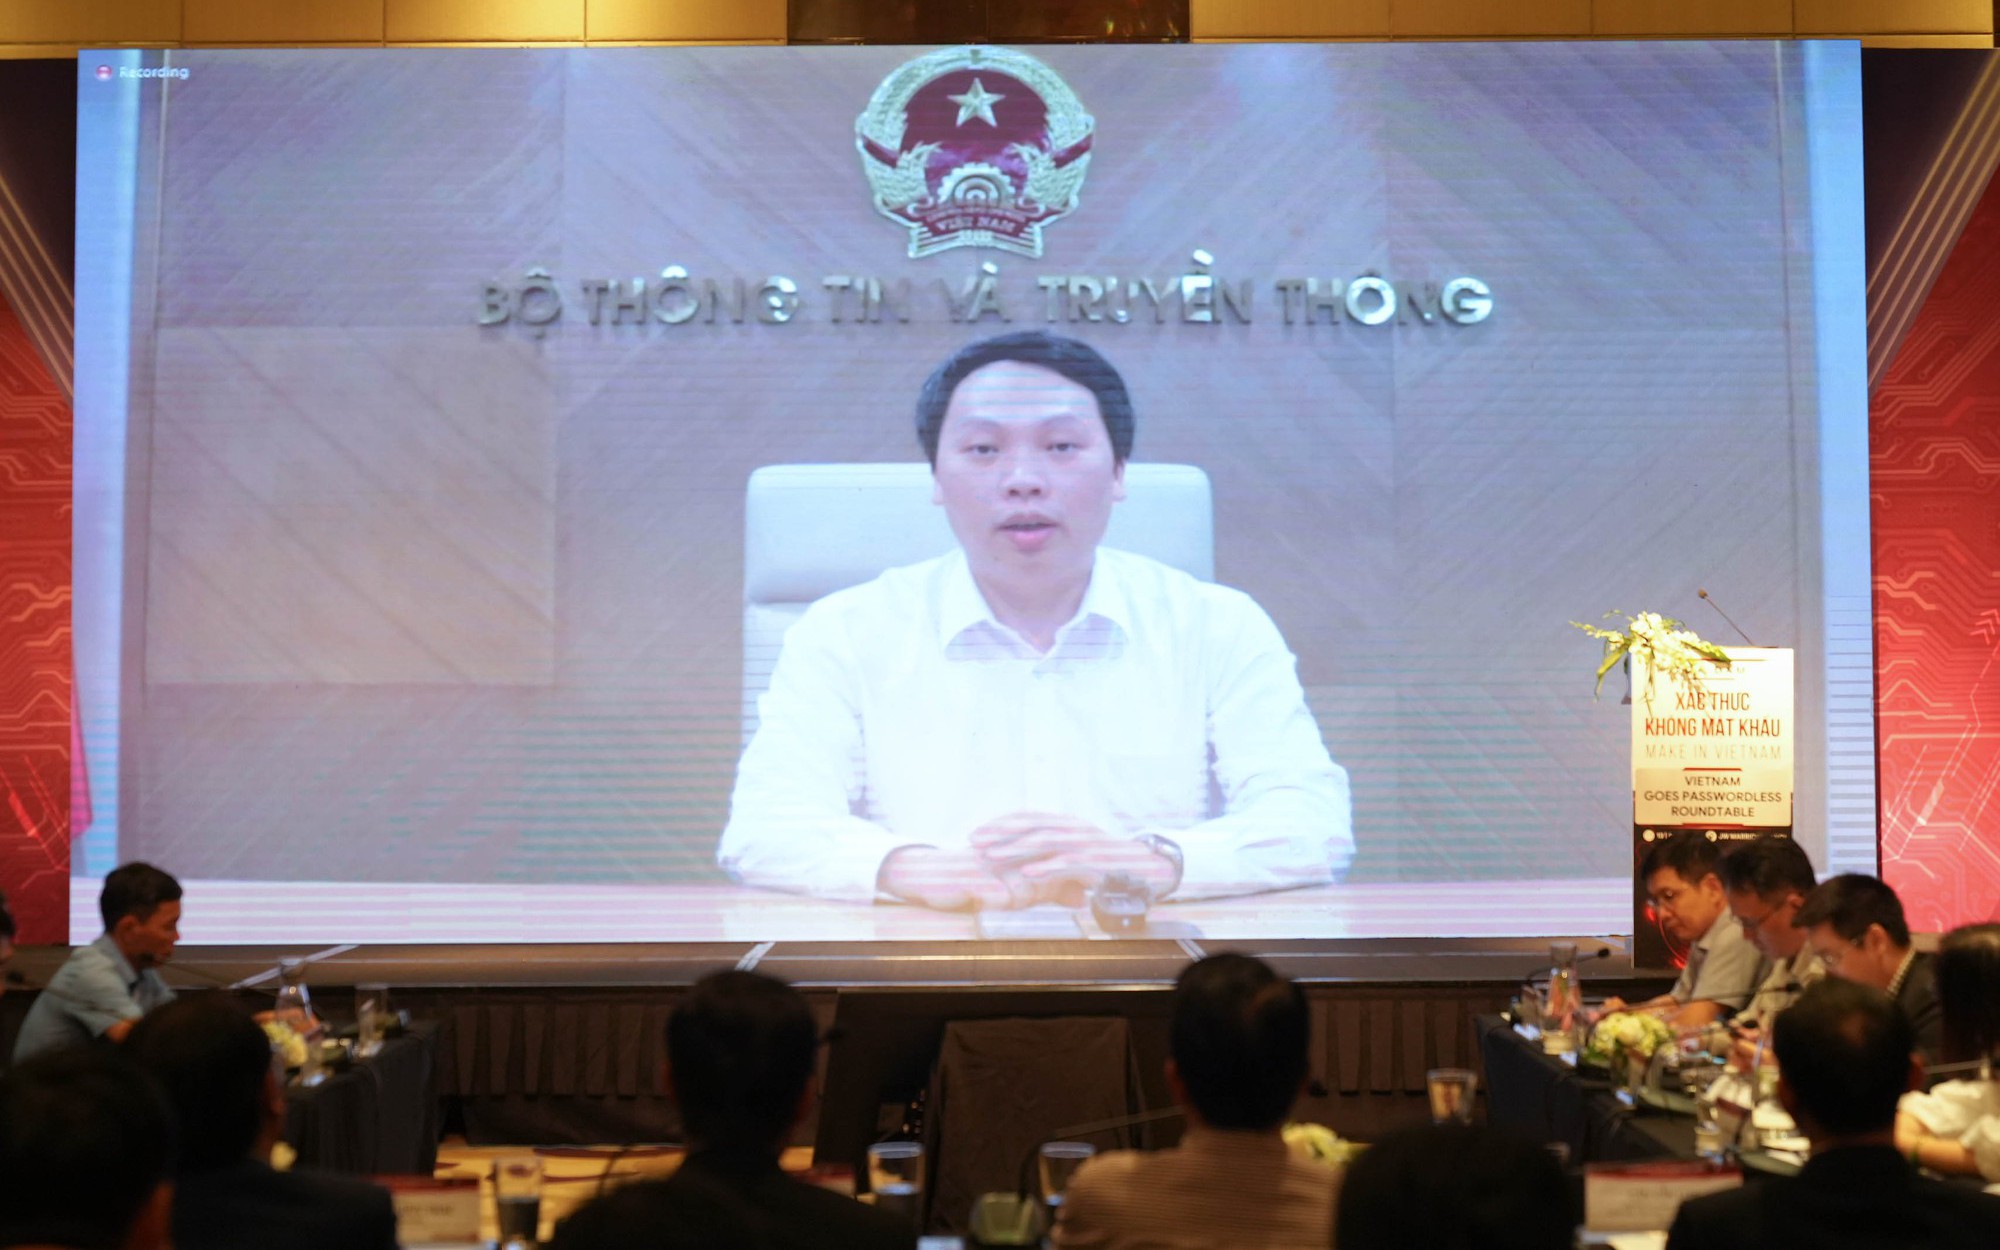 Ông Nguyễn Thành Phúc:Các giải pháp xác thực không mật khẩu "Make in Việt Nam", góp phần hướng tới mục tiêu Việt Nam trở thành cường quốc về ATTT mạng.